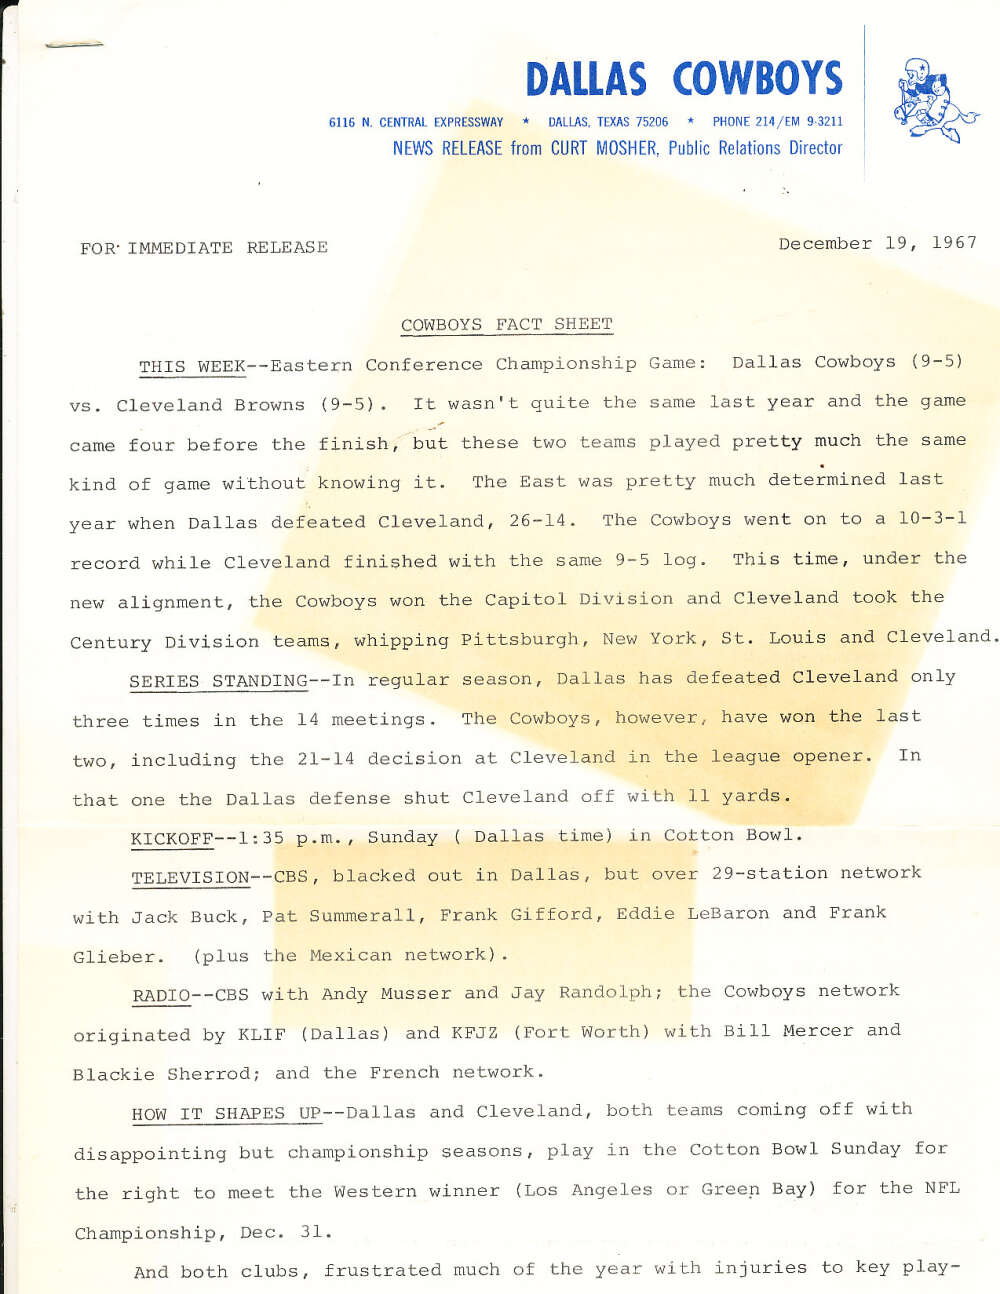 12/19 1967 Dalls Cowboys press release bx1